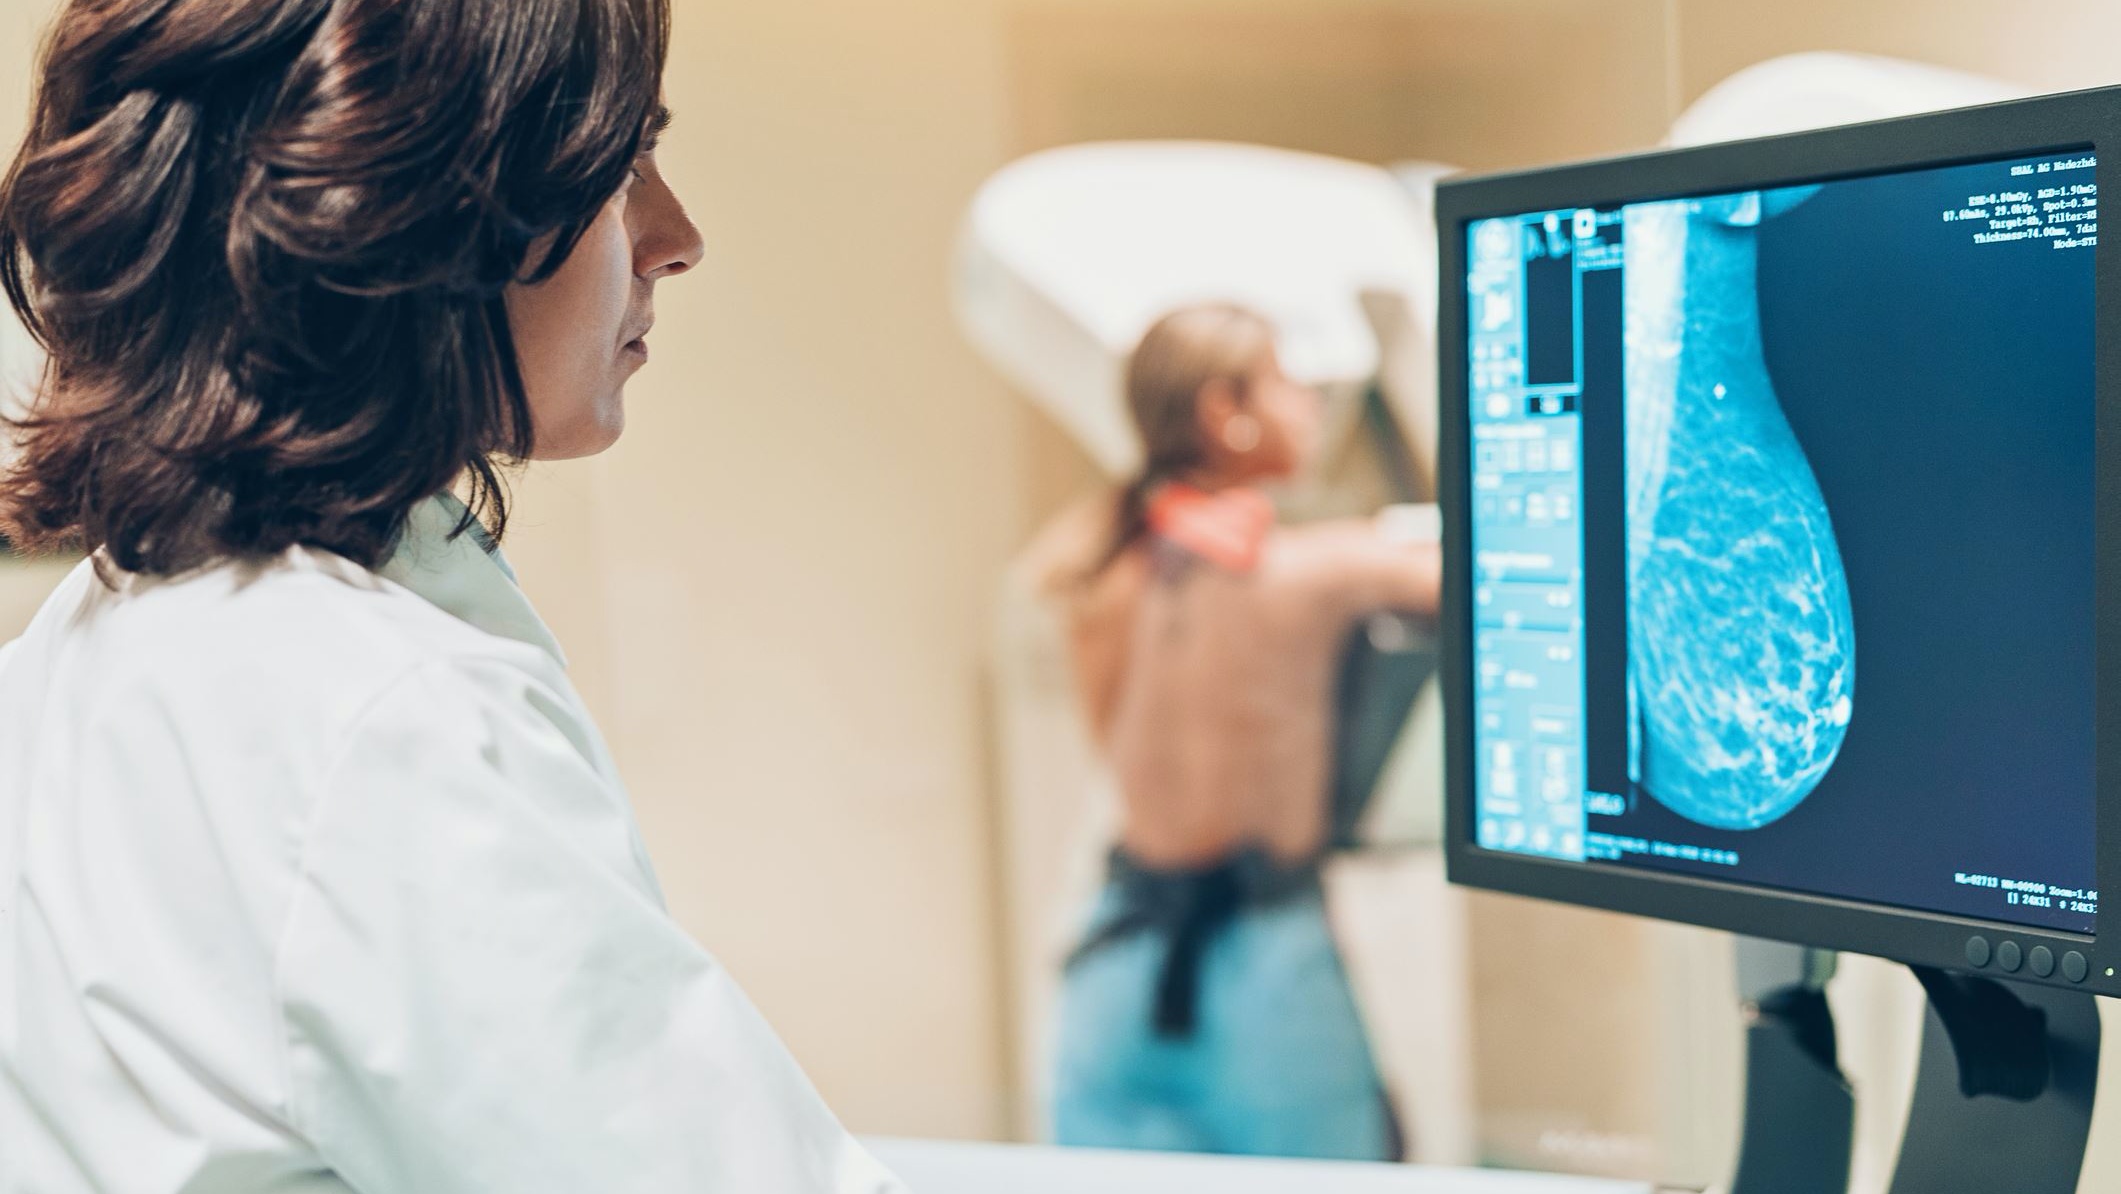 في فرنسا حيث تتم دعوة النساء اللواتي تتراوح أعمارهن بين 50 و 74 عاما إلى الخضوع لتصوير الثدي بالأشعة كل عامين